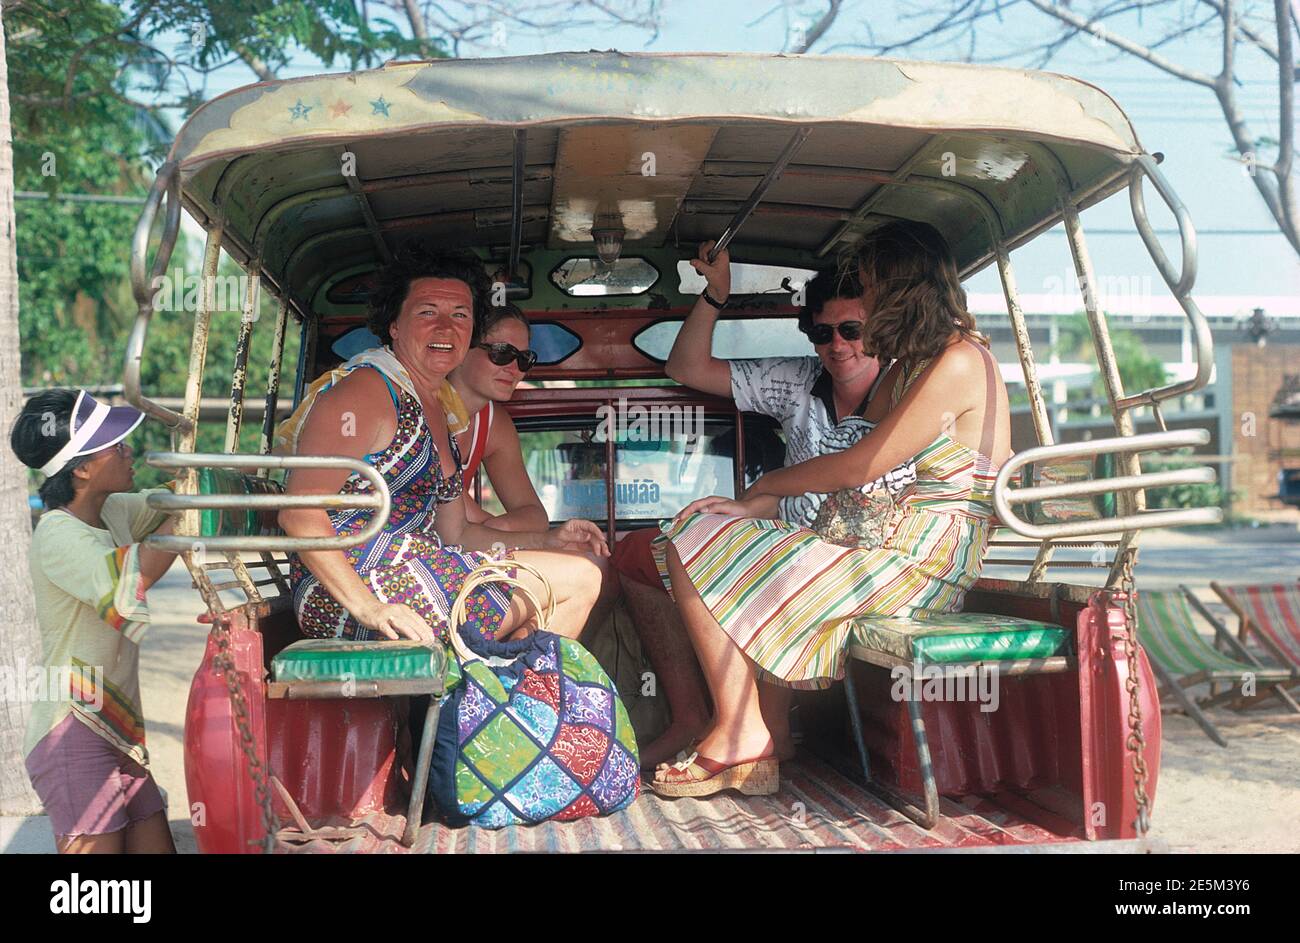 Thailand. Pattaya. Tourists on `Baht' bus. Stock Photo